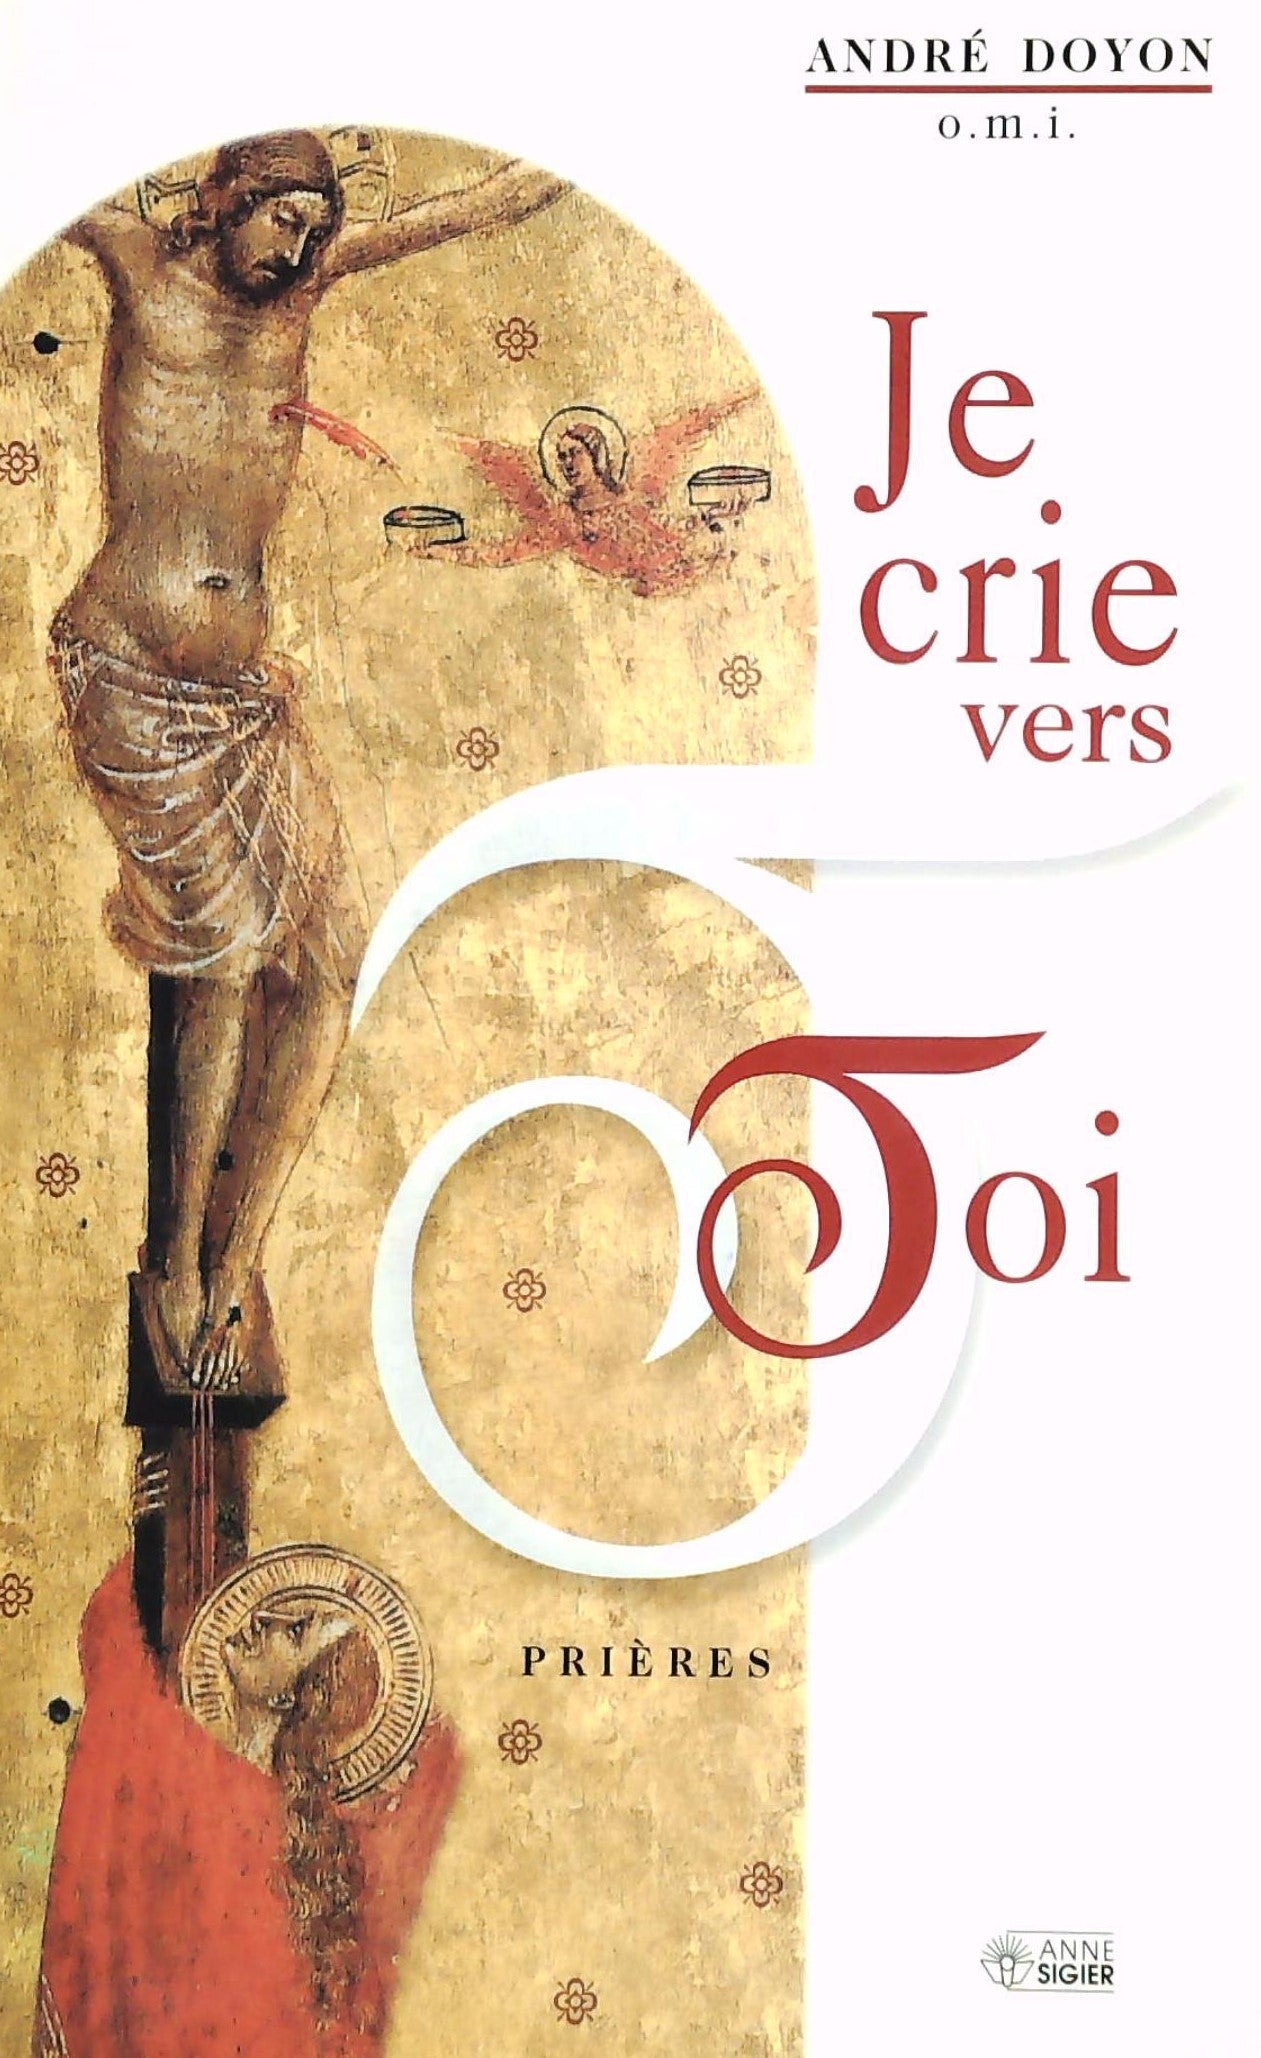 Livre ISBN 2891293584 Je crie vers toi : Prières (André Doyon)